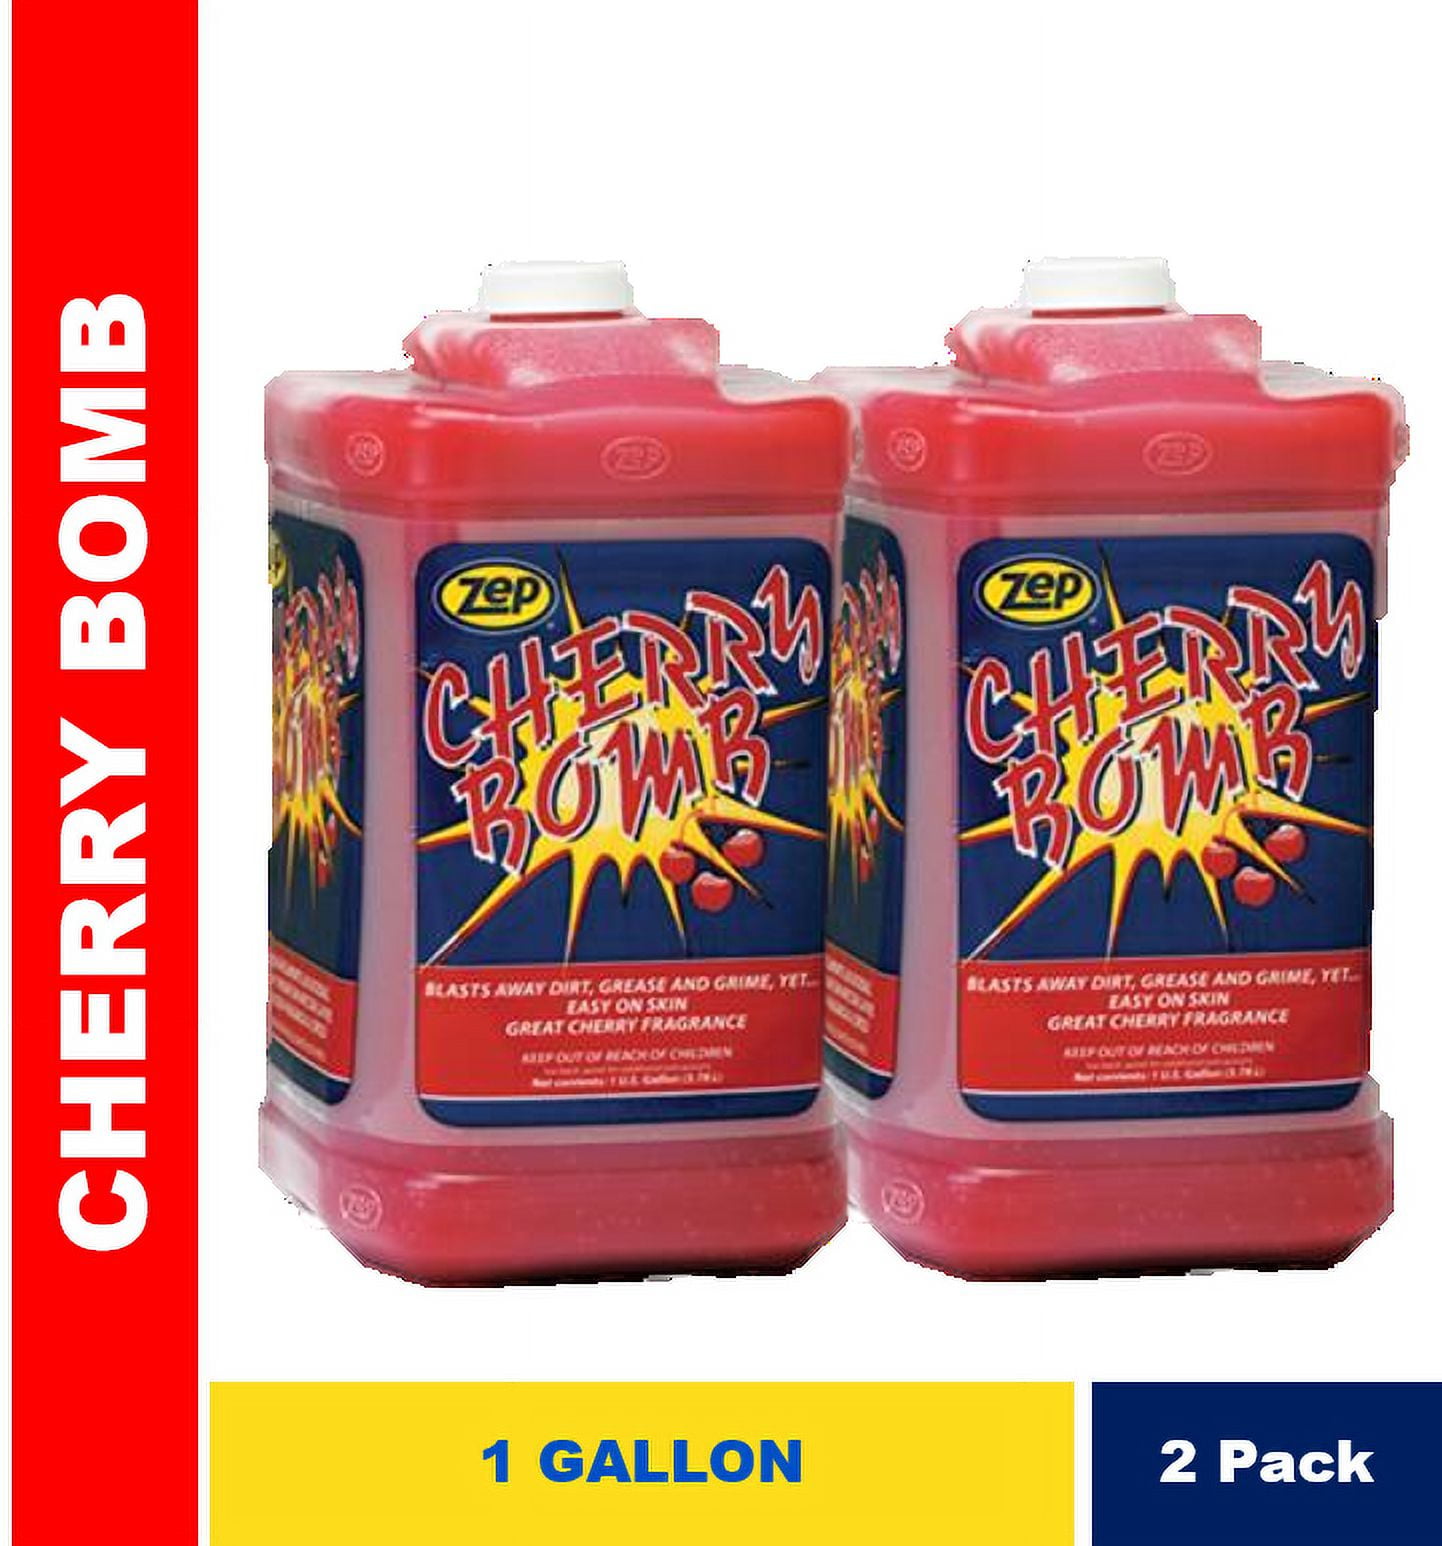 Zep Cherry Bomb Gel Hand Cleaner